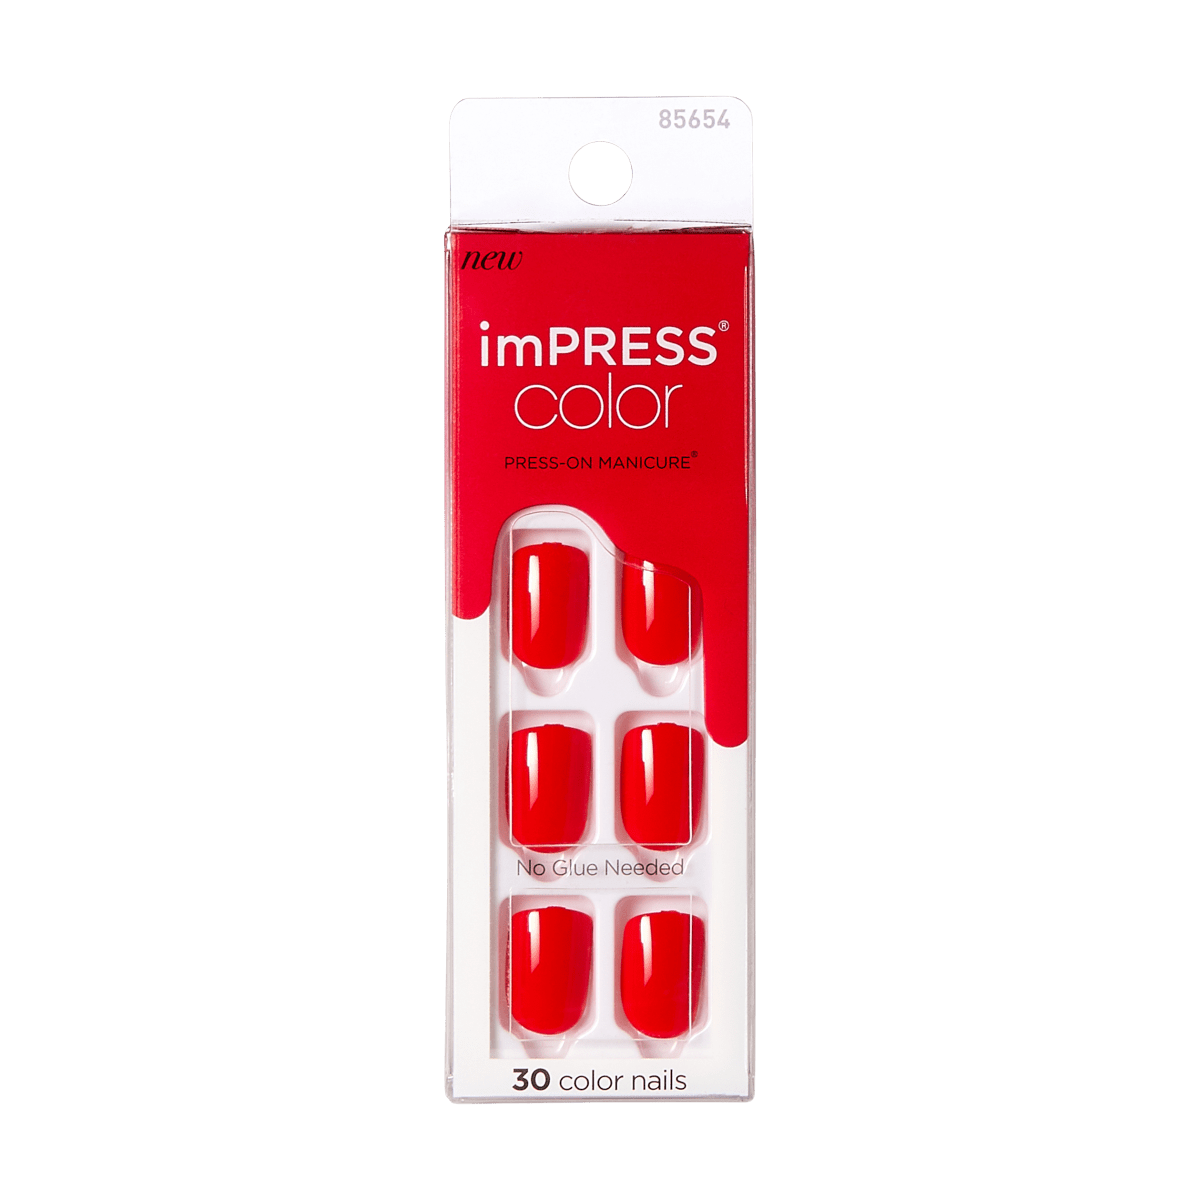 imPRESS Color Press-On Manicure  - Cajun